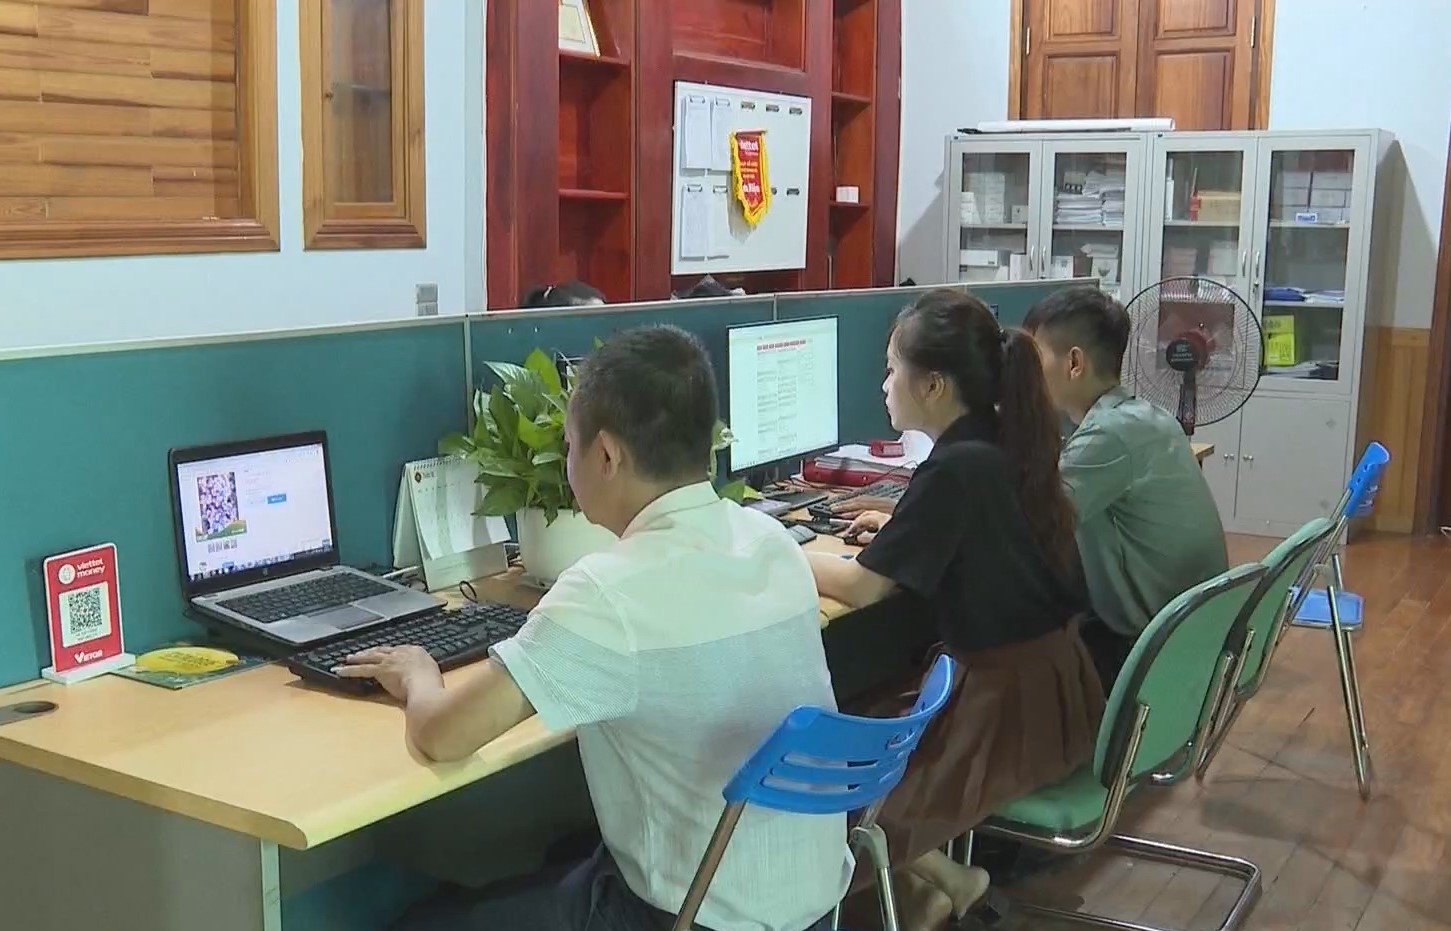 Hội Nông dân phối hợp với Bưu điện tỉnh Điện Biên mở 1.200 tài khoản giao dịch trên sàn Post Mart cho hội viên nông dân.